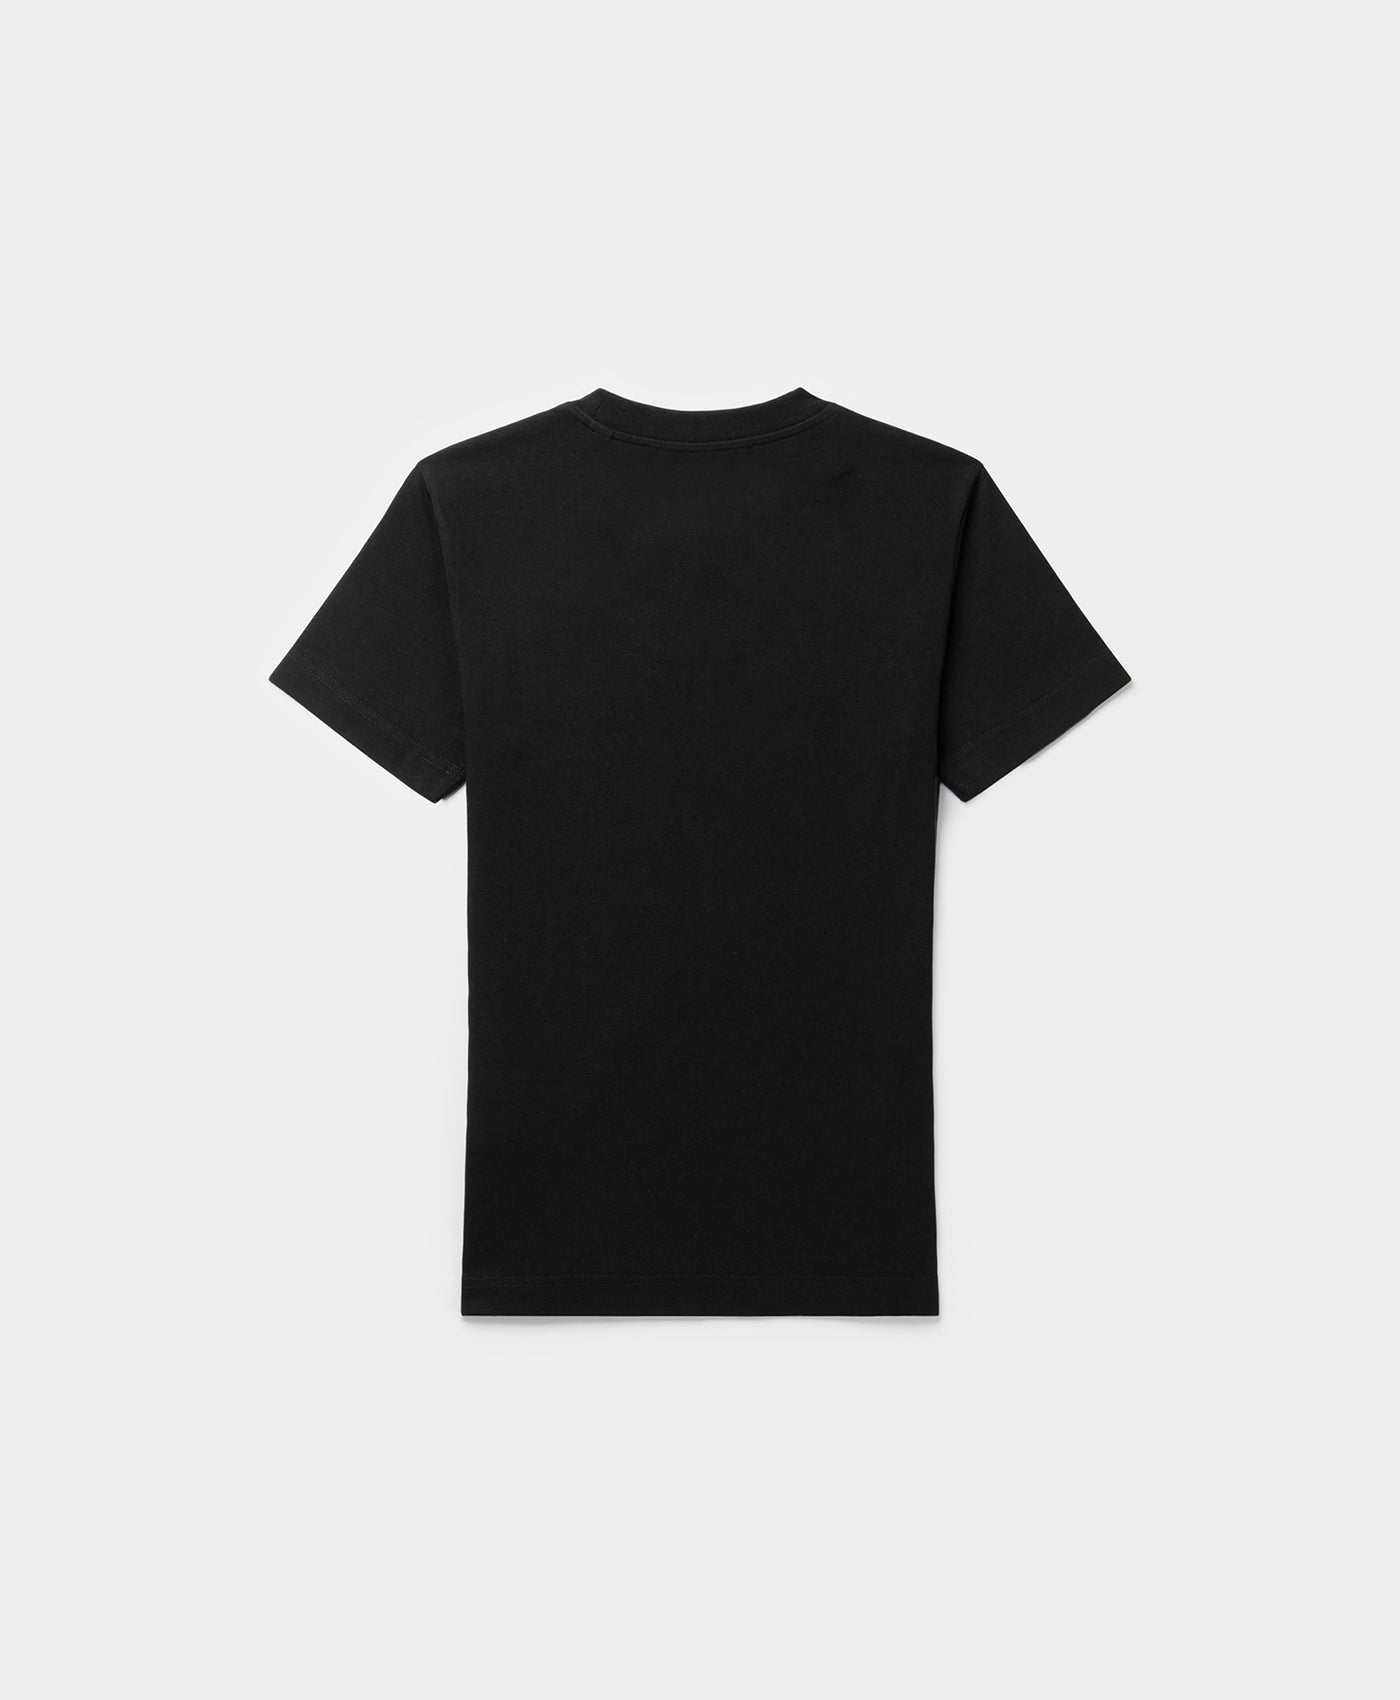 DP - Black Emefa T-Shirt - Packshot - Rear